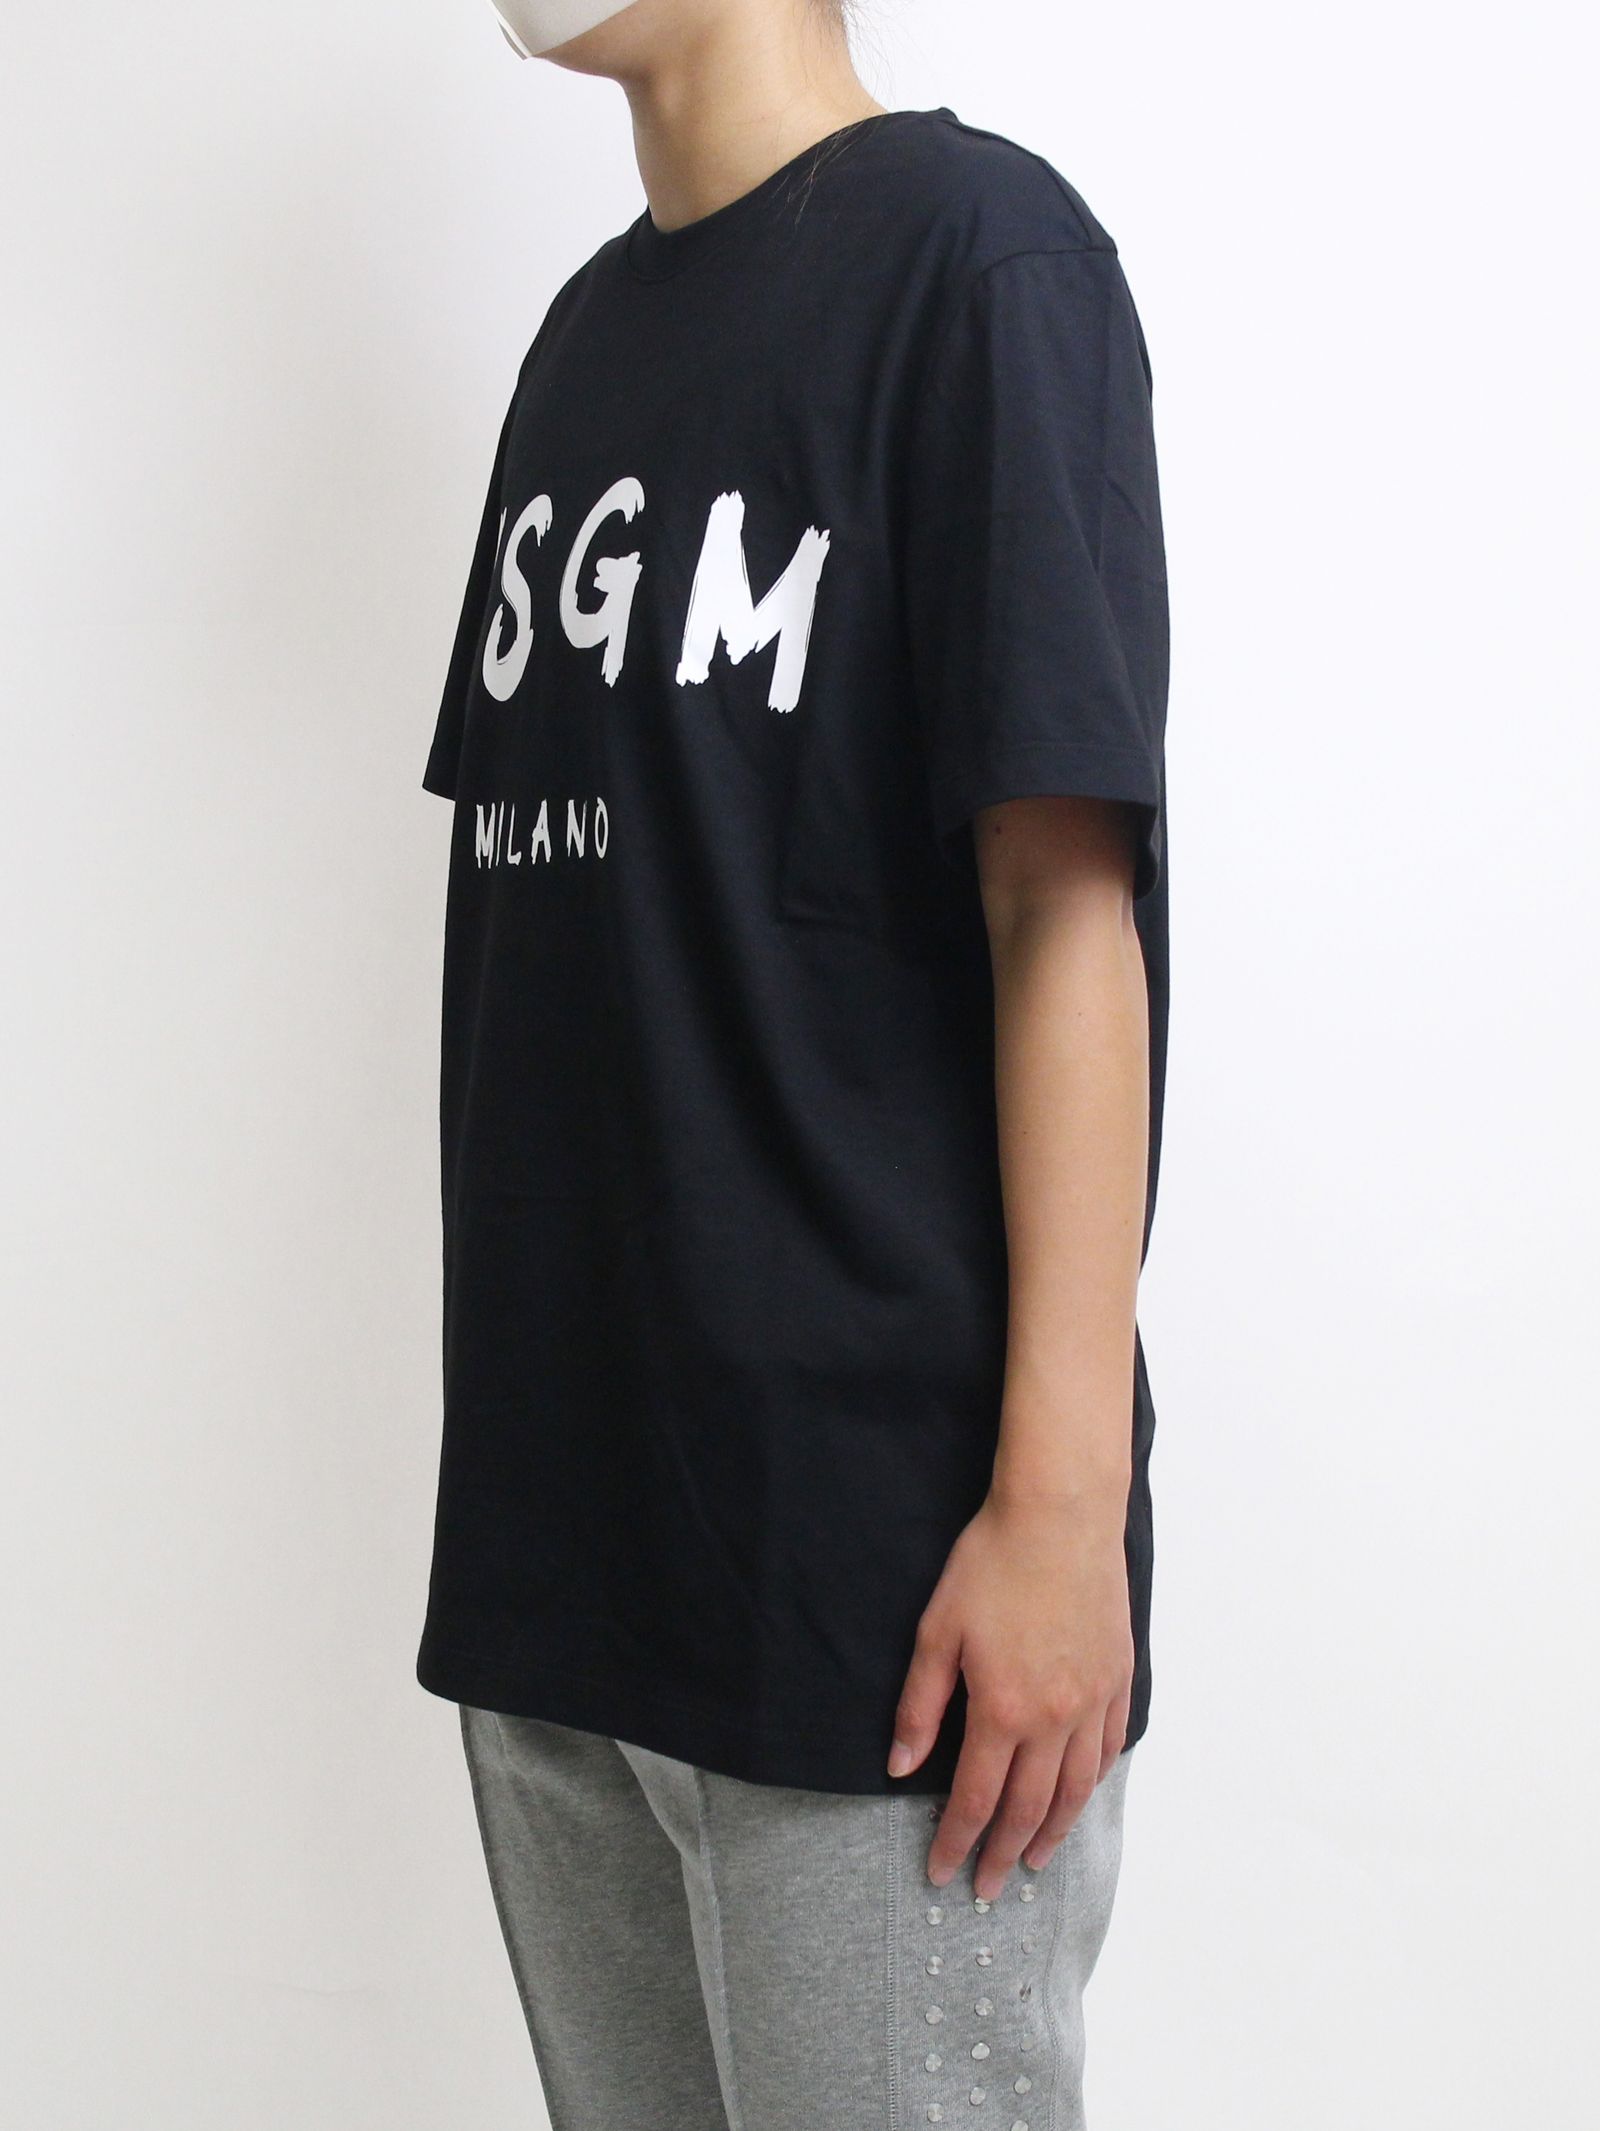 ロゴプリントTシャツ - PAINT BRUSHED LOGO T-SHIRTS - BLACK - Black - XS